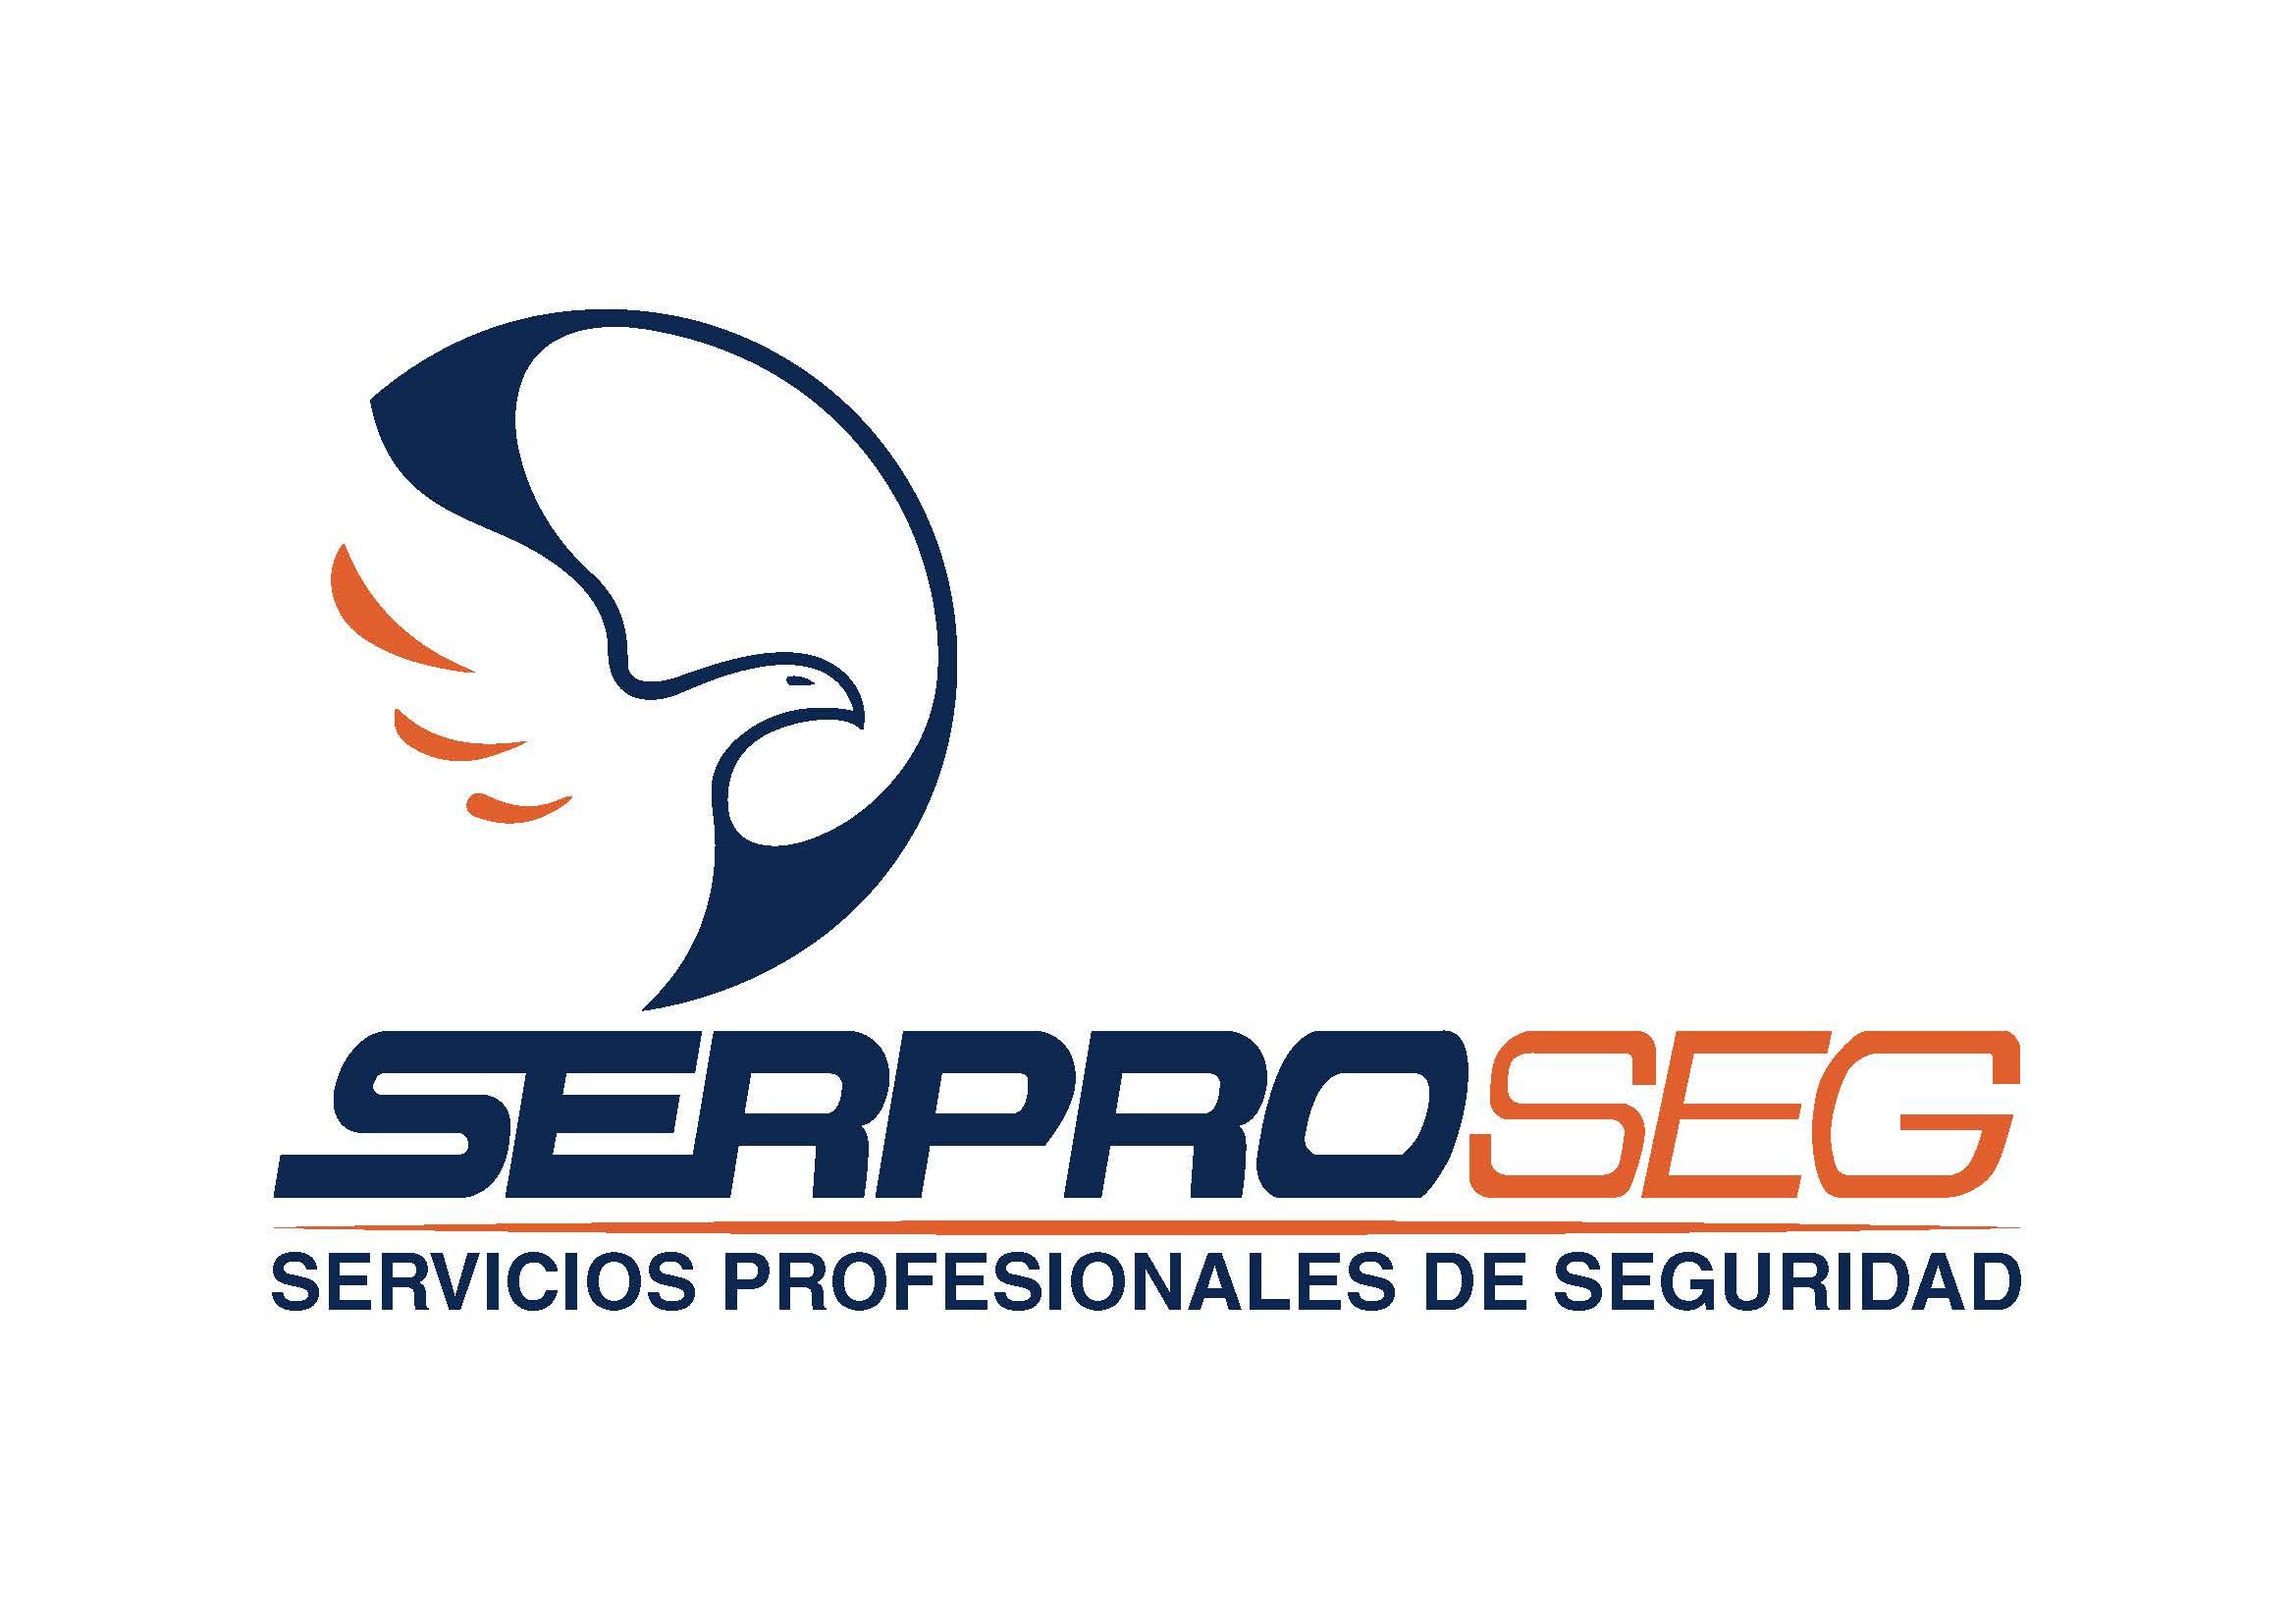 SERVICIOS PROFESIONALES DE SEGURIDAD (SERPROSEG)